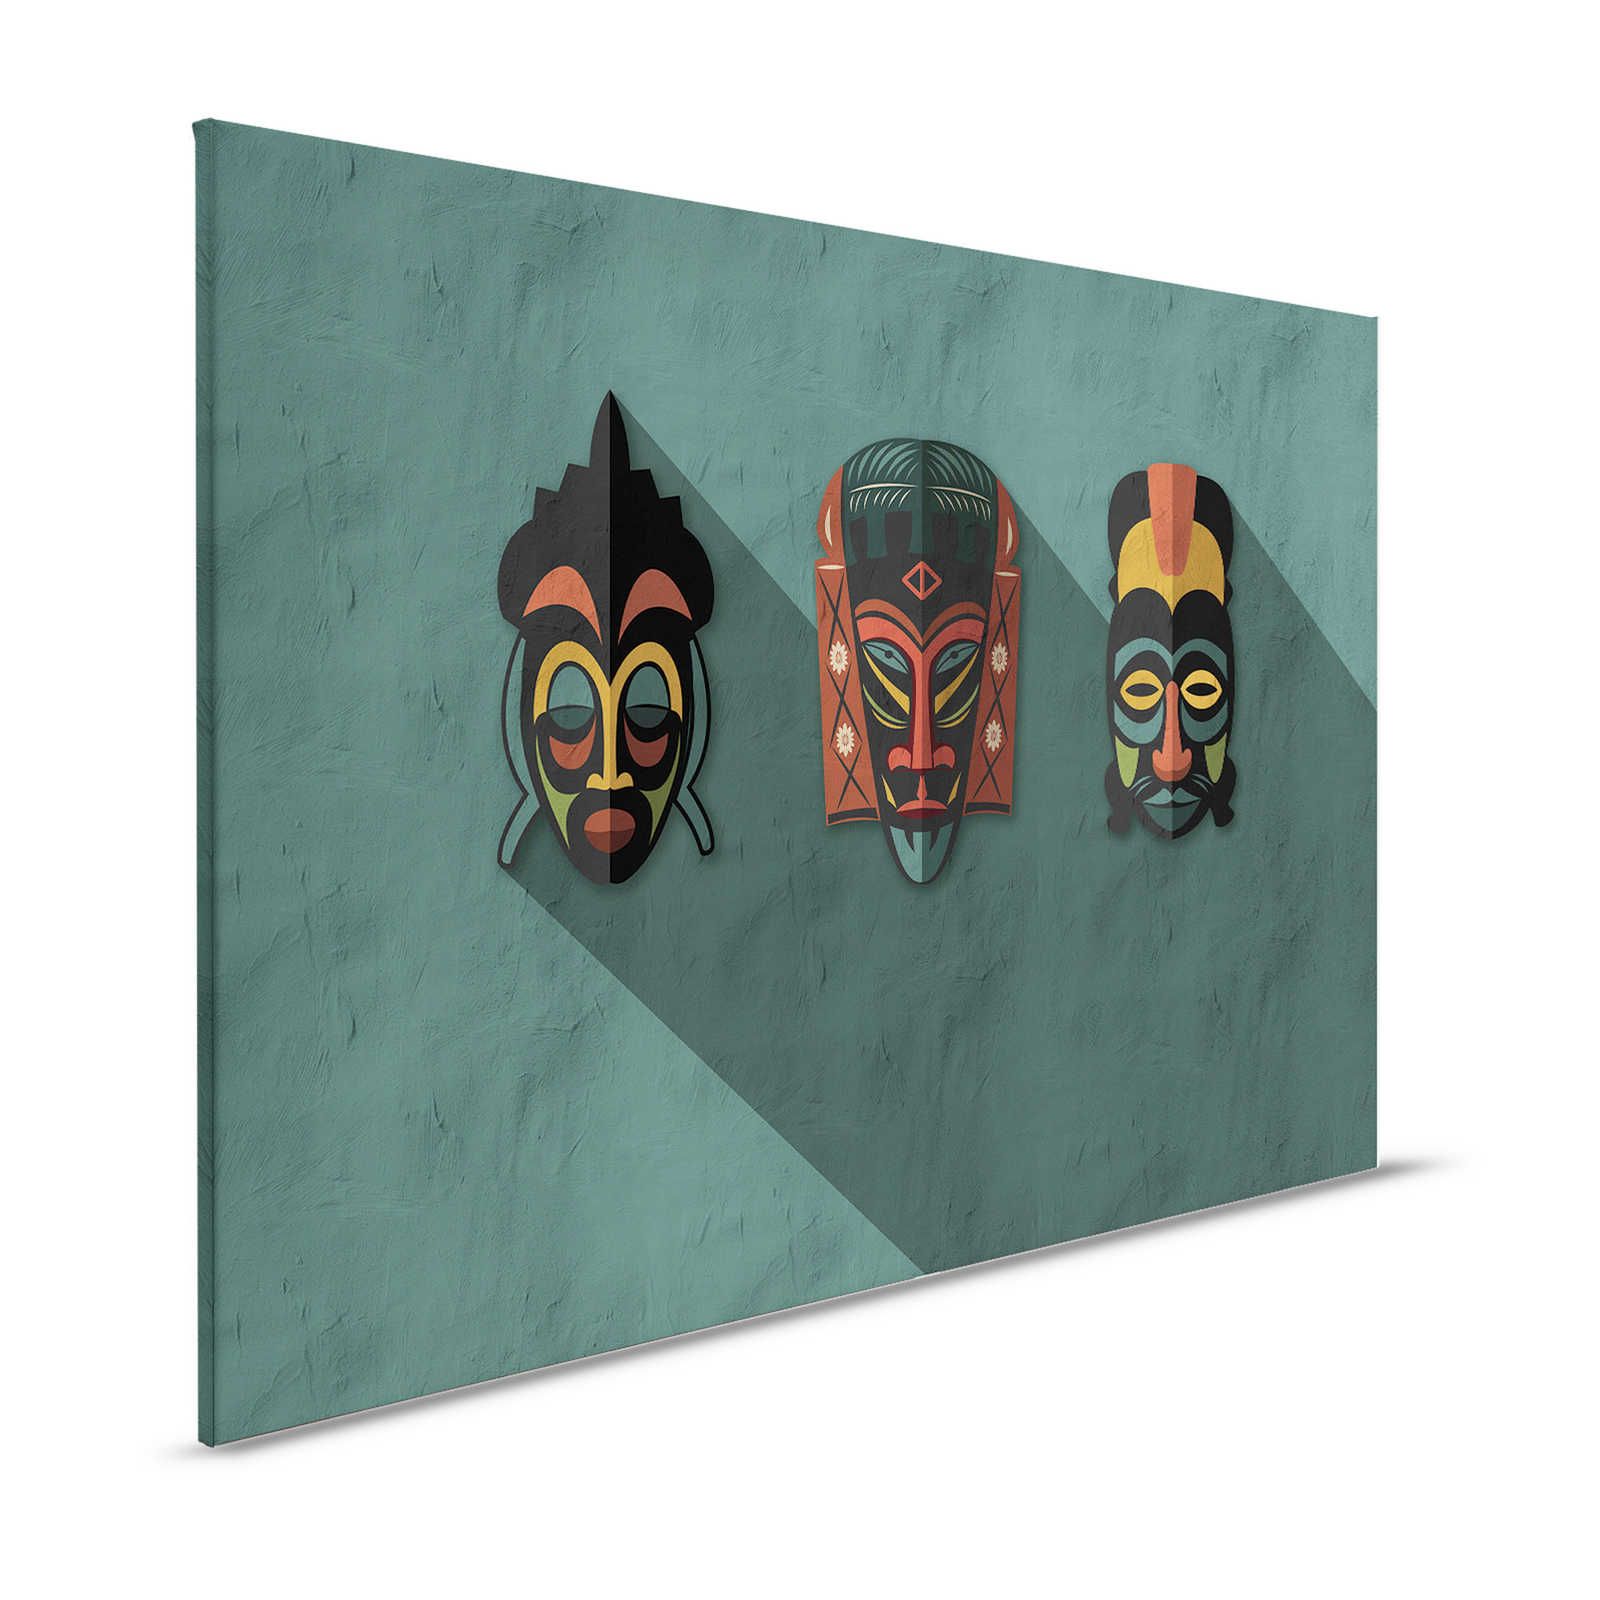 Zulu 3 - Quadro su tela Petrol Africa Masks Zulu Design - 1,20 m x 0,80 m
